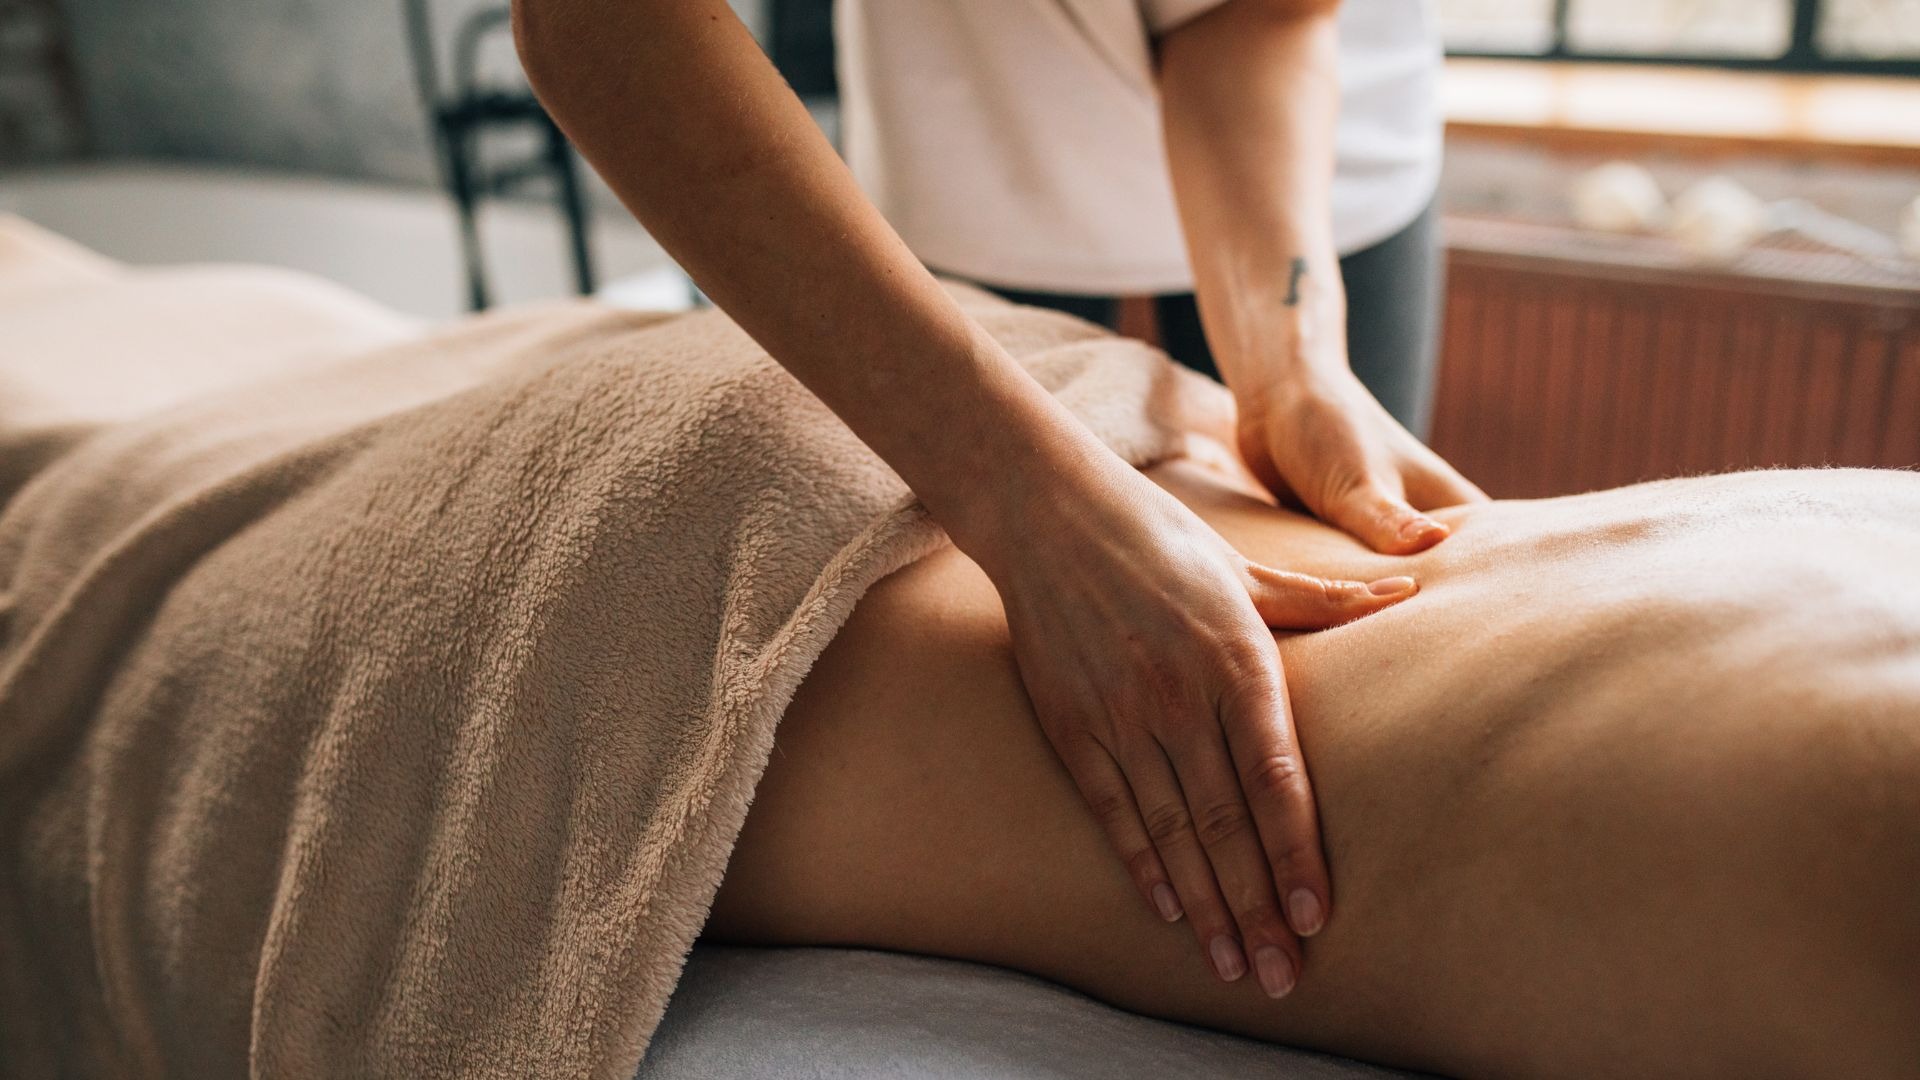 Healing Massage cursus